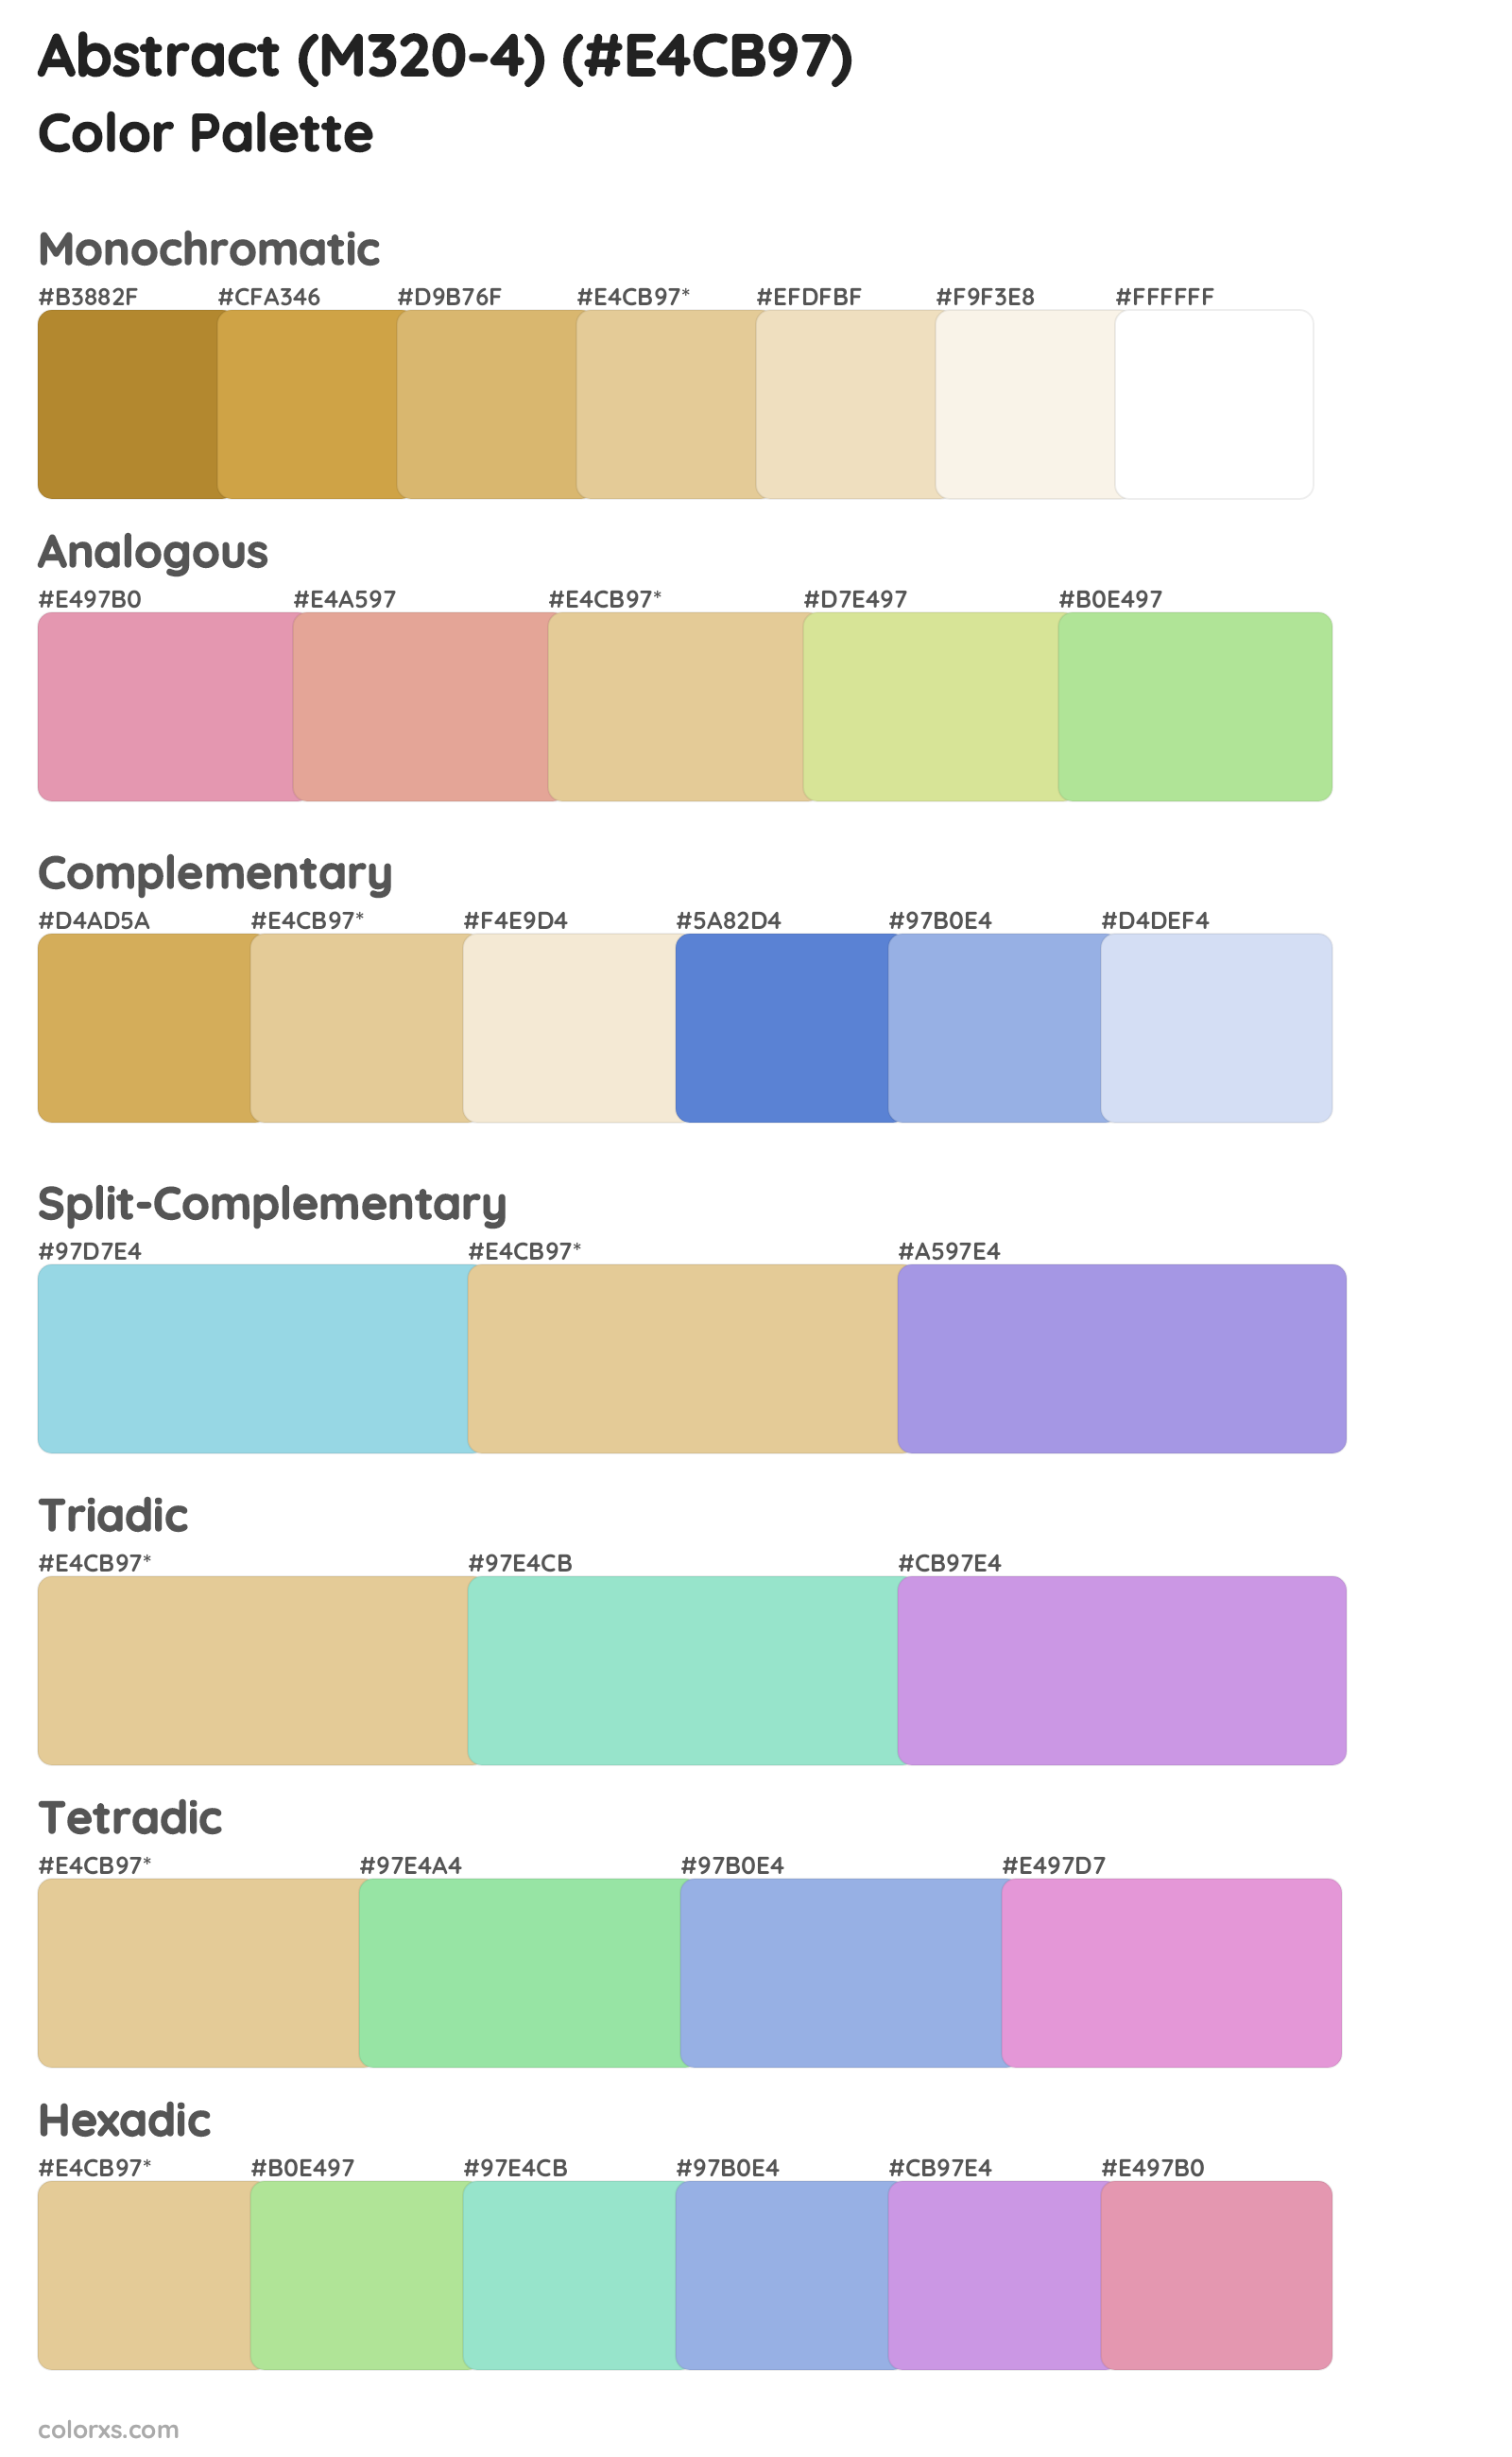 Abstract (M320-4) Color Scheme Palettes